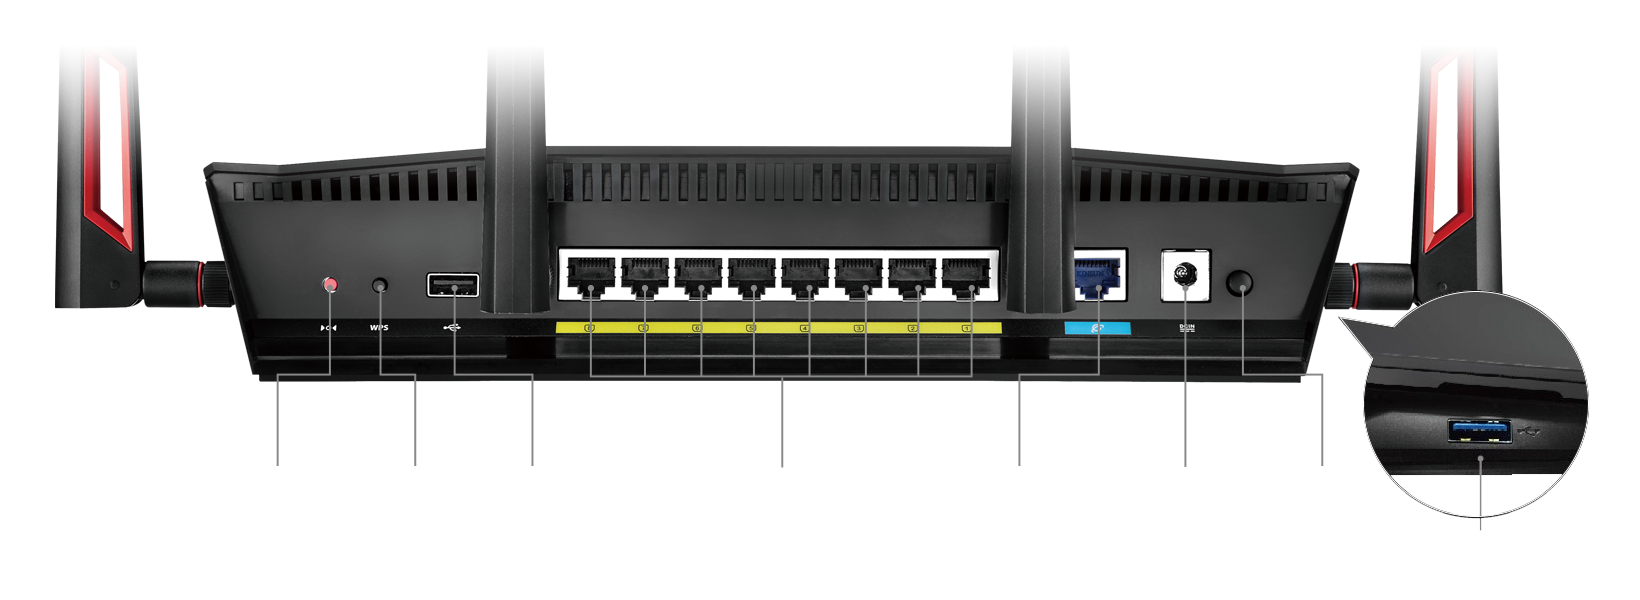 8 Gigabit LAN-poorten - tweemaal zoveel als de meeste routers bieden - maken de RT-AC88U uw digitale woning-hub